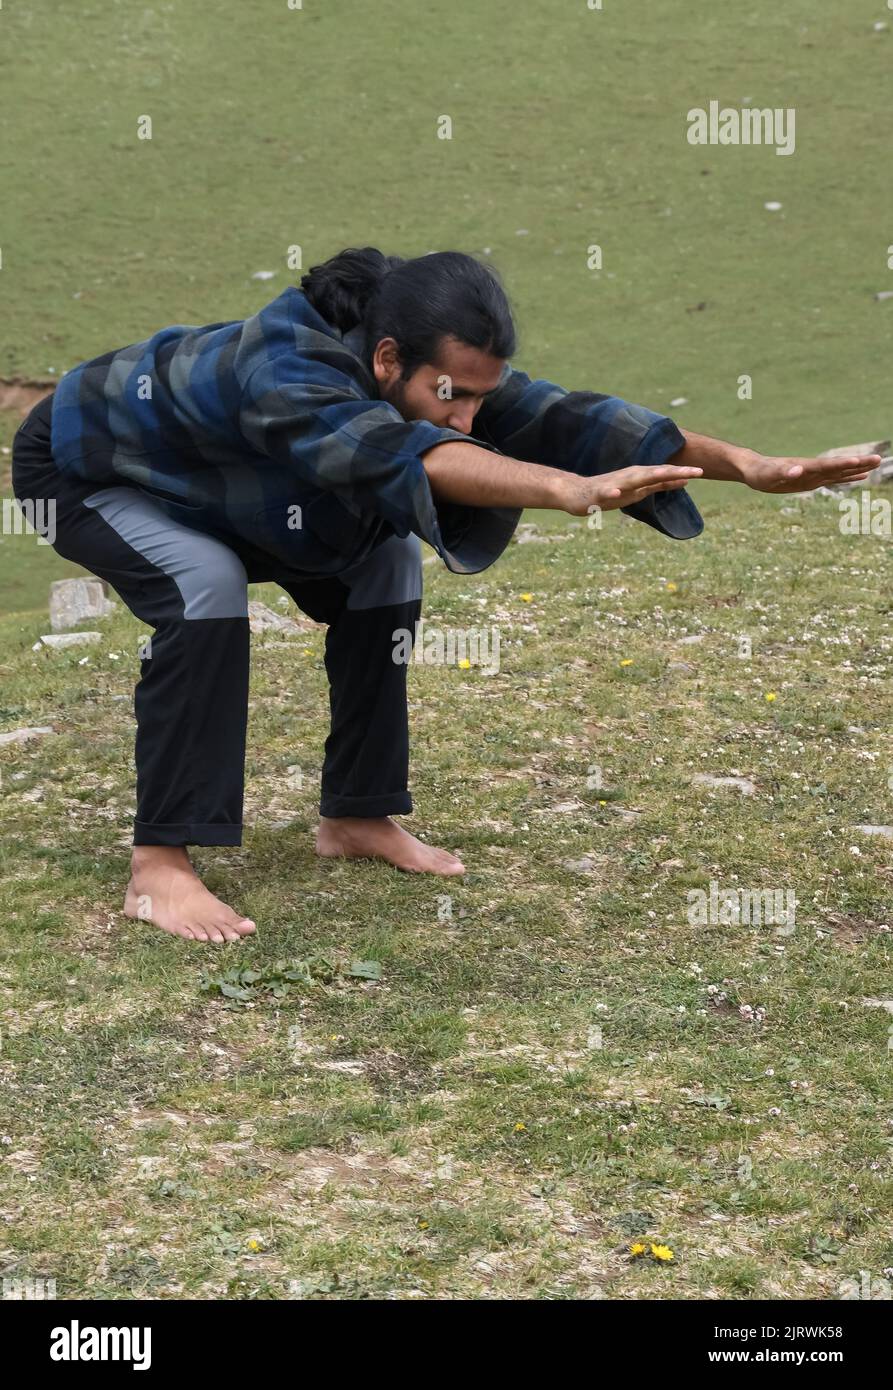 Un hombre joven indio de pelo largo que practica la postura del oso (estiramiento delantero de la variación de la postura de la silla) en al aire libre. Un joven haciendo Utkatasana yoga pose (Variation Forward Stretch). Foto de stock